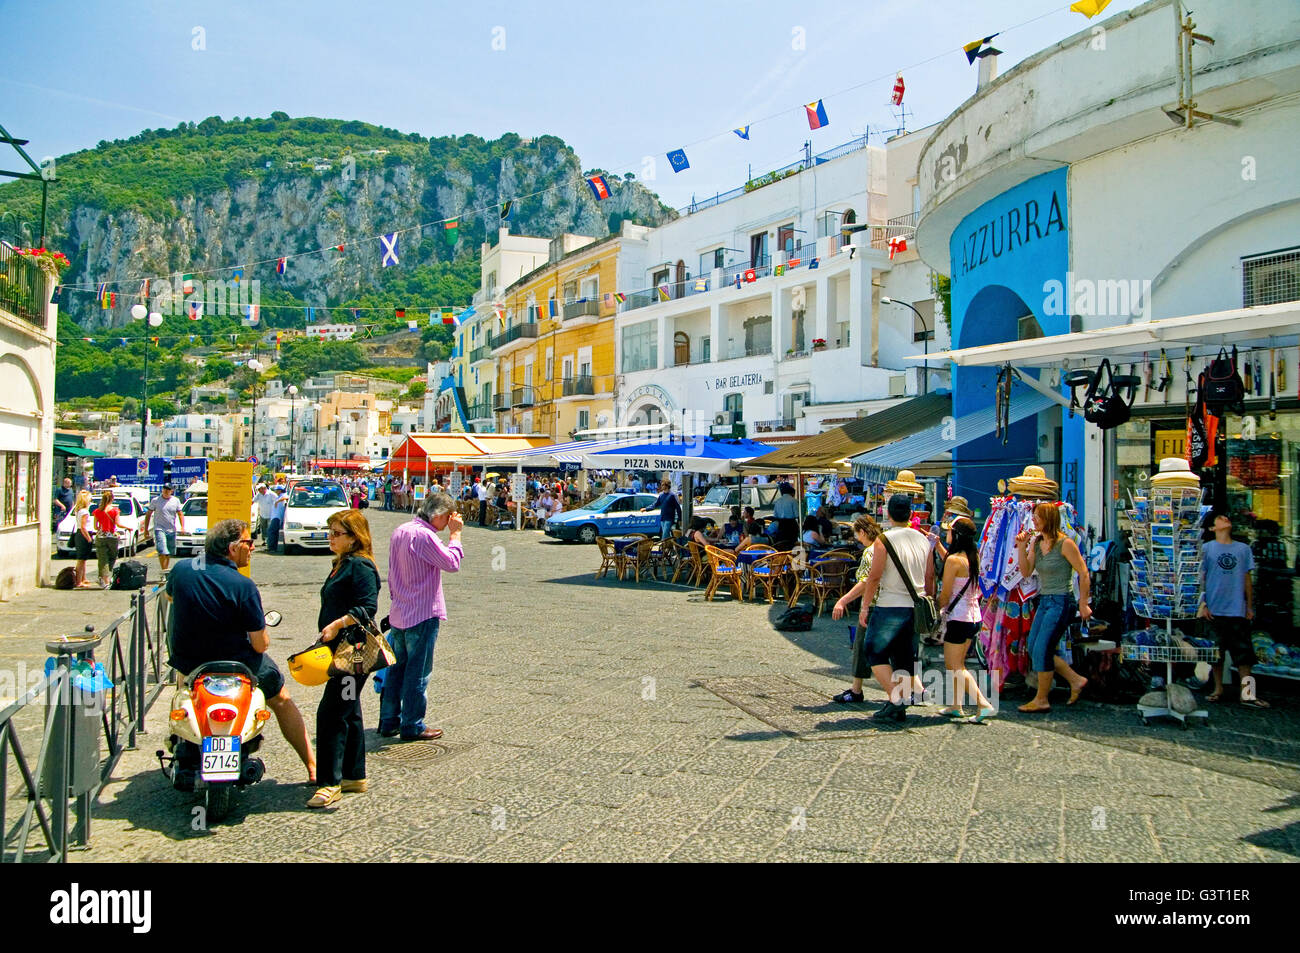 Le front de mer dans le port de Capri est bordée de magasins touristiques et cafés - arrêt Sorrento, dans la baie de Naples, Italie Banque D'Images